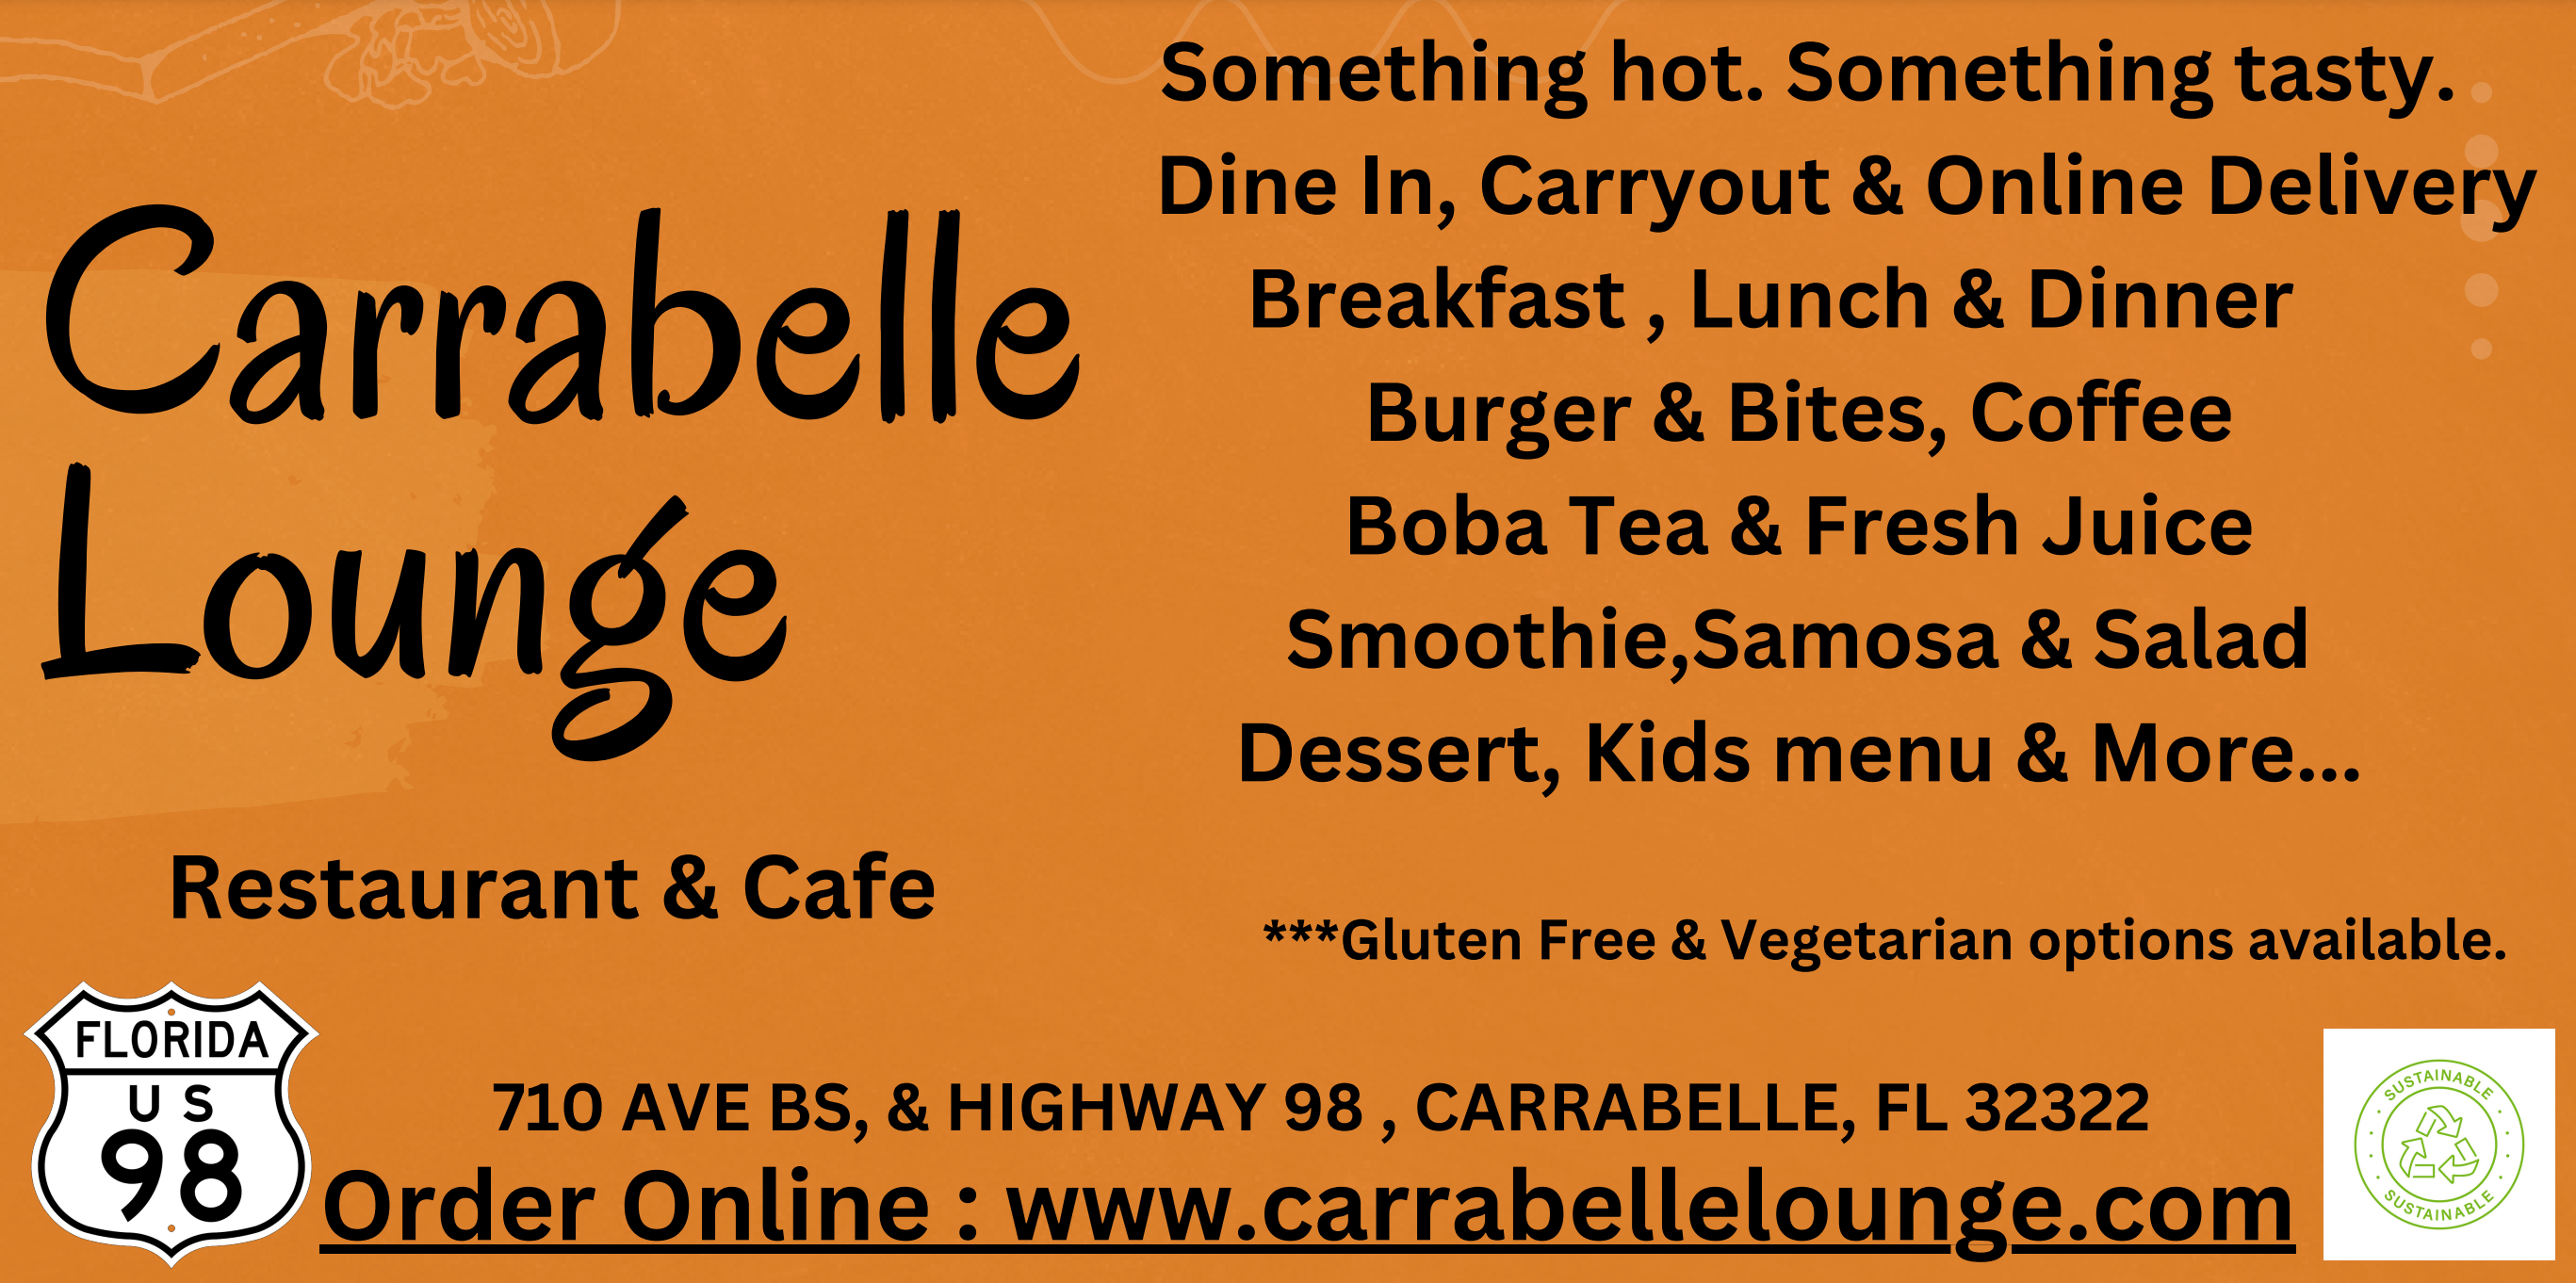 Carrabelle Lounge Restaurant & Cafe